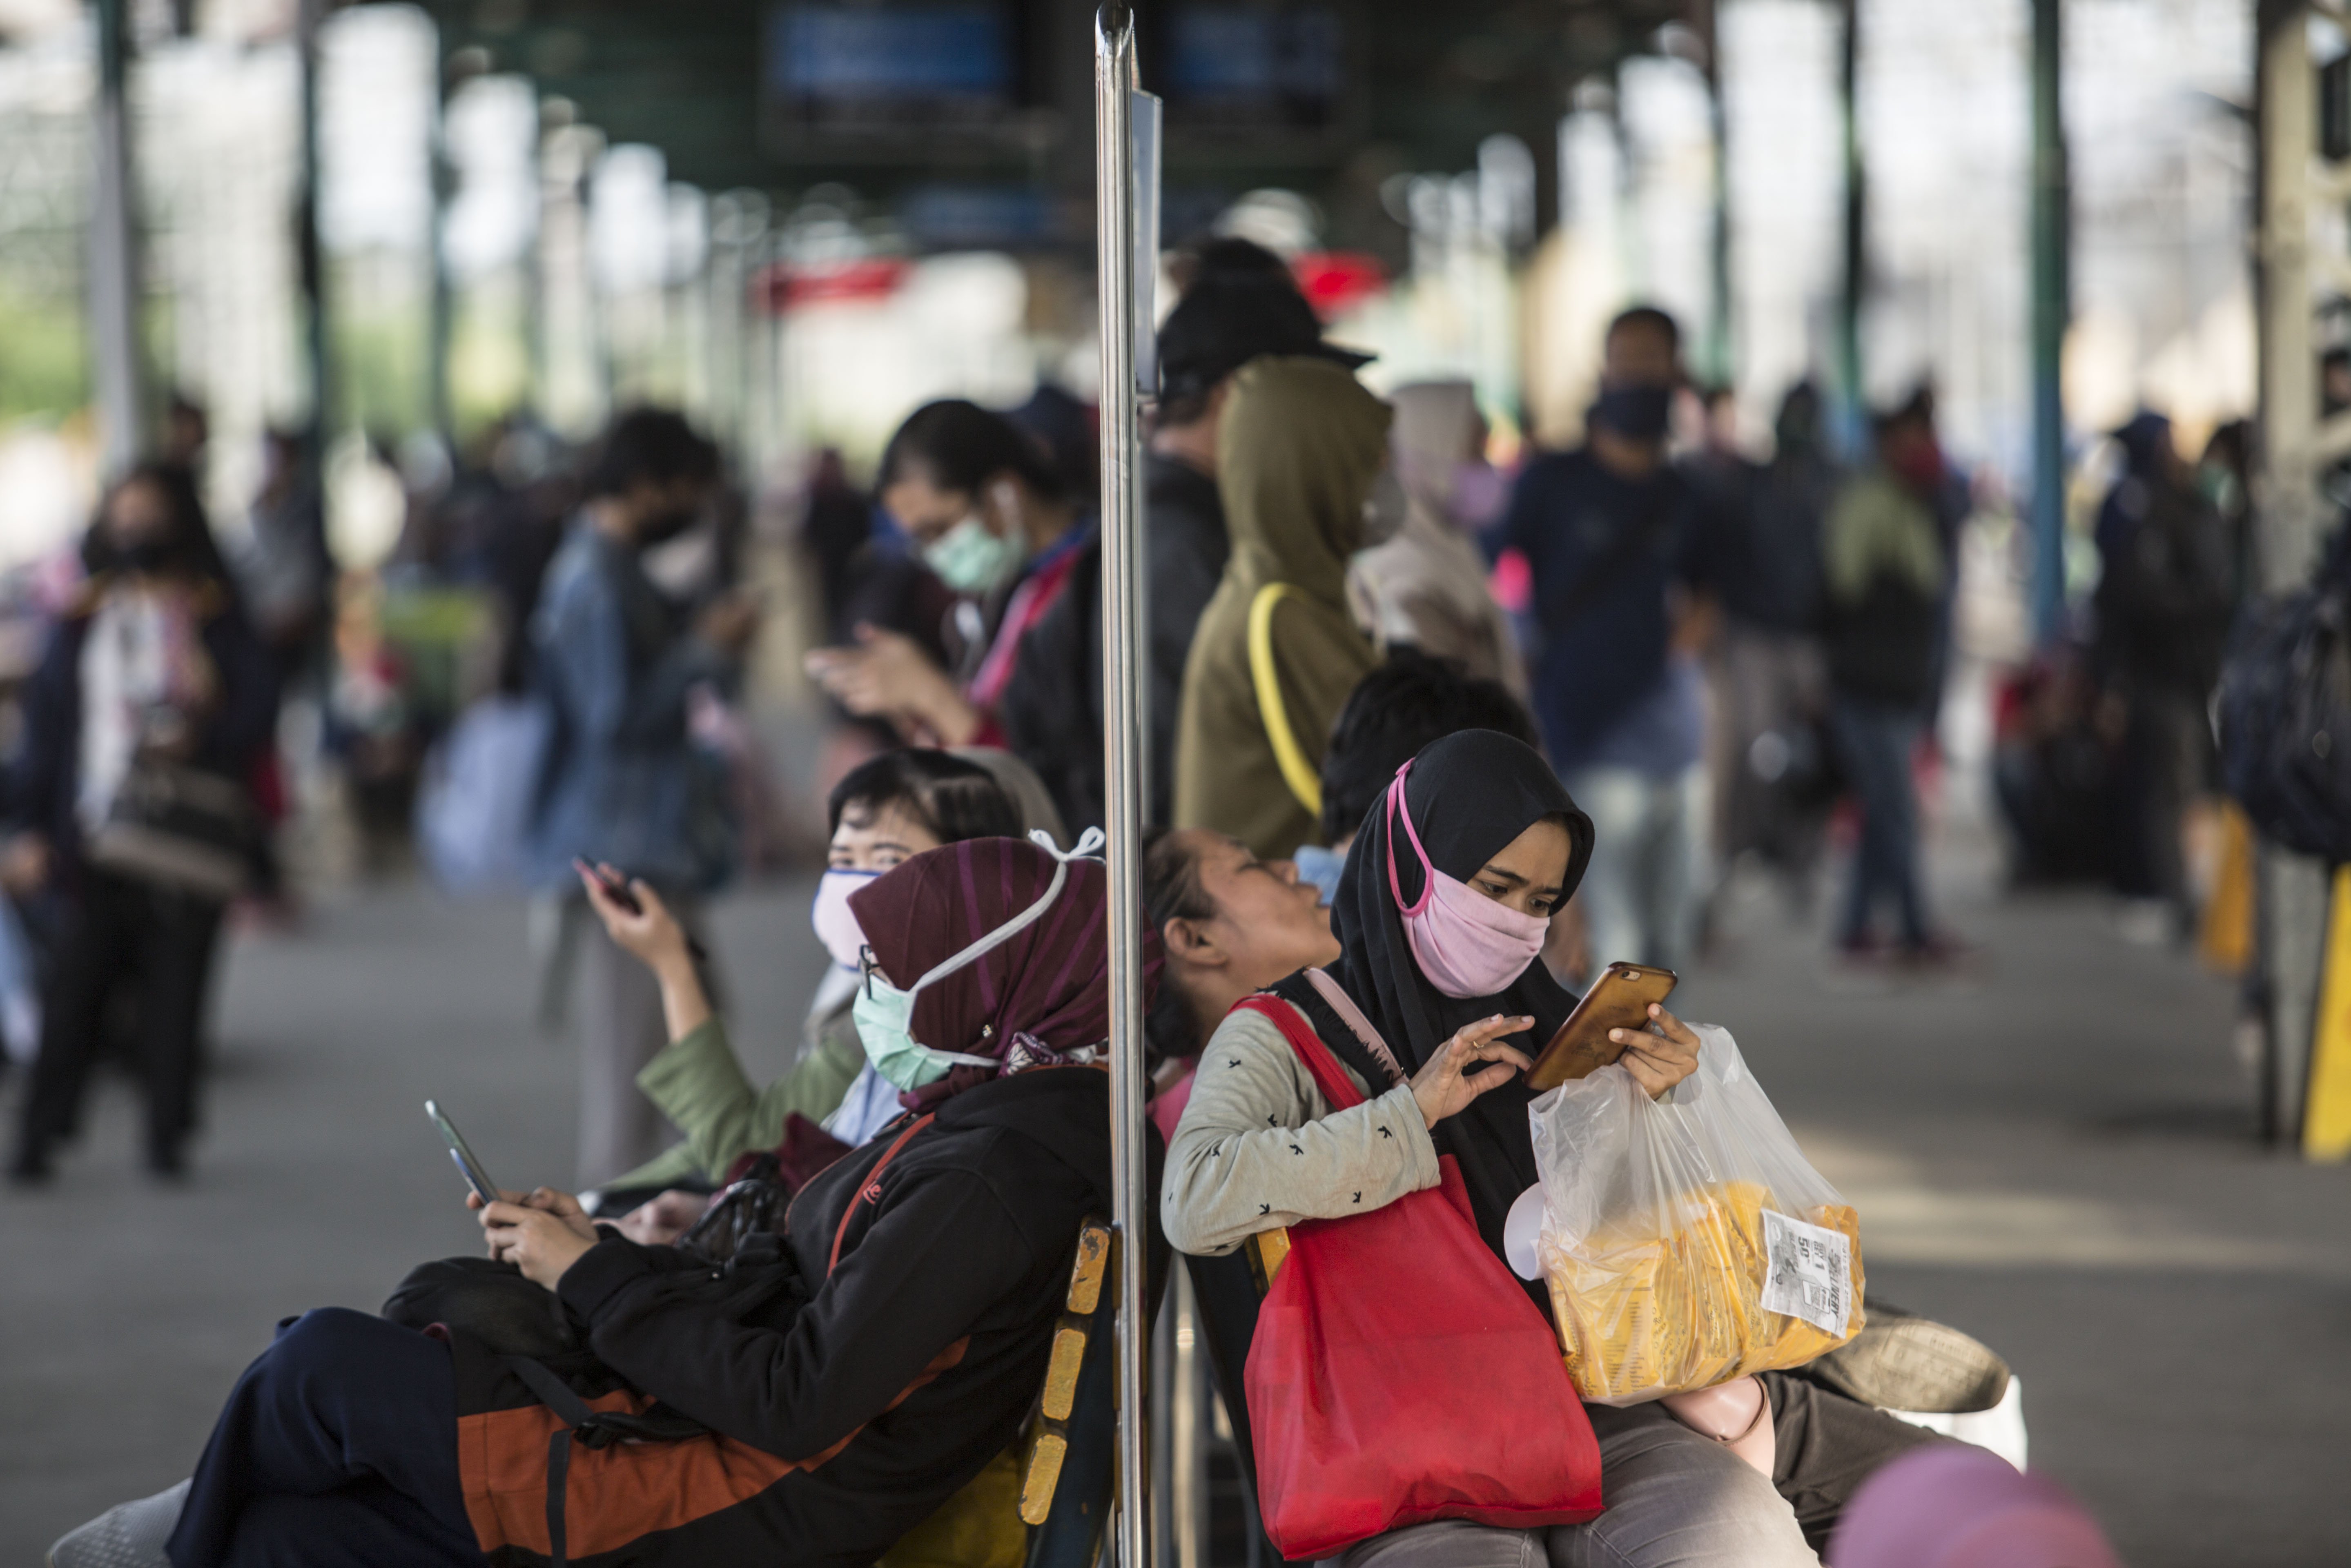 Sejumlah penumpang KRL menunggu kedatangan kereta di Stasiun Manggarai, Jakarta Pusat, Selasa (14/4/2020). Semenjak pemberlakuan Pembatasan Sosial Bersekala Besar (PSBB) di DKI Jakarta pada 10 April 2020, warga pengguna moda transportasi KRL masih terpantau ramai.